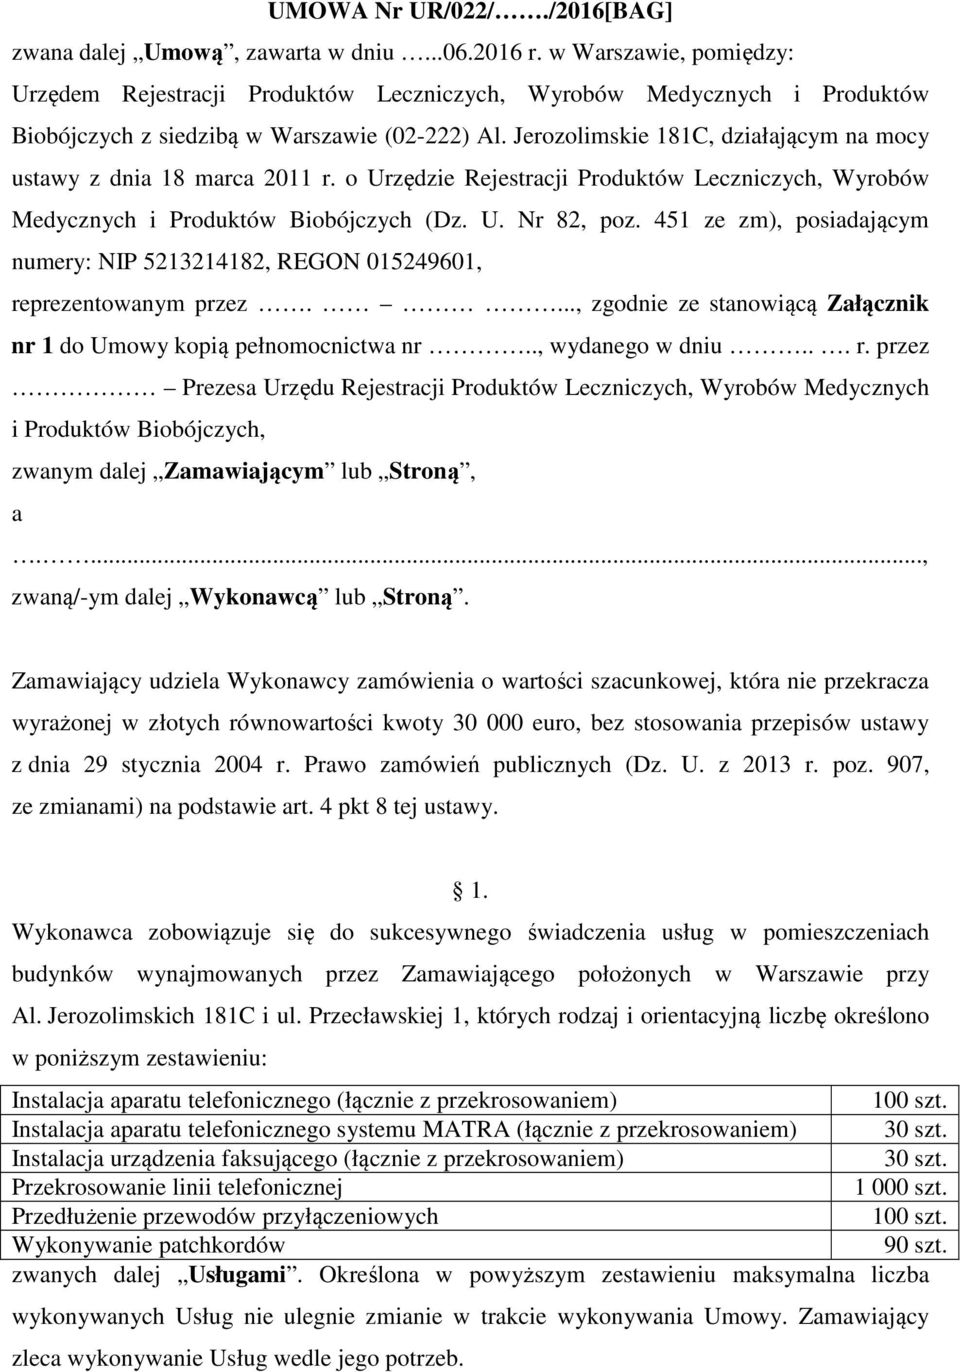 Jerozolimskie 181C, działającym na mocy ustawy z dnia 18 marca 2011 r. o Urzędzie Rejestracji Produktów Leczniczych, Wyrobów Medycznych i Produktów Biobójczych (Dz. U. Nr 82, poz.